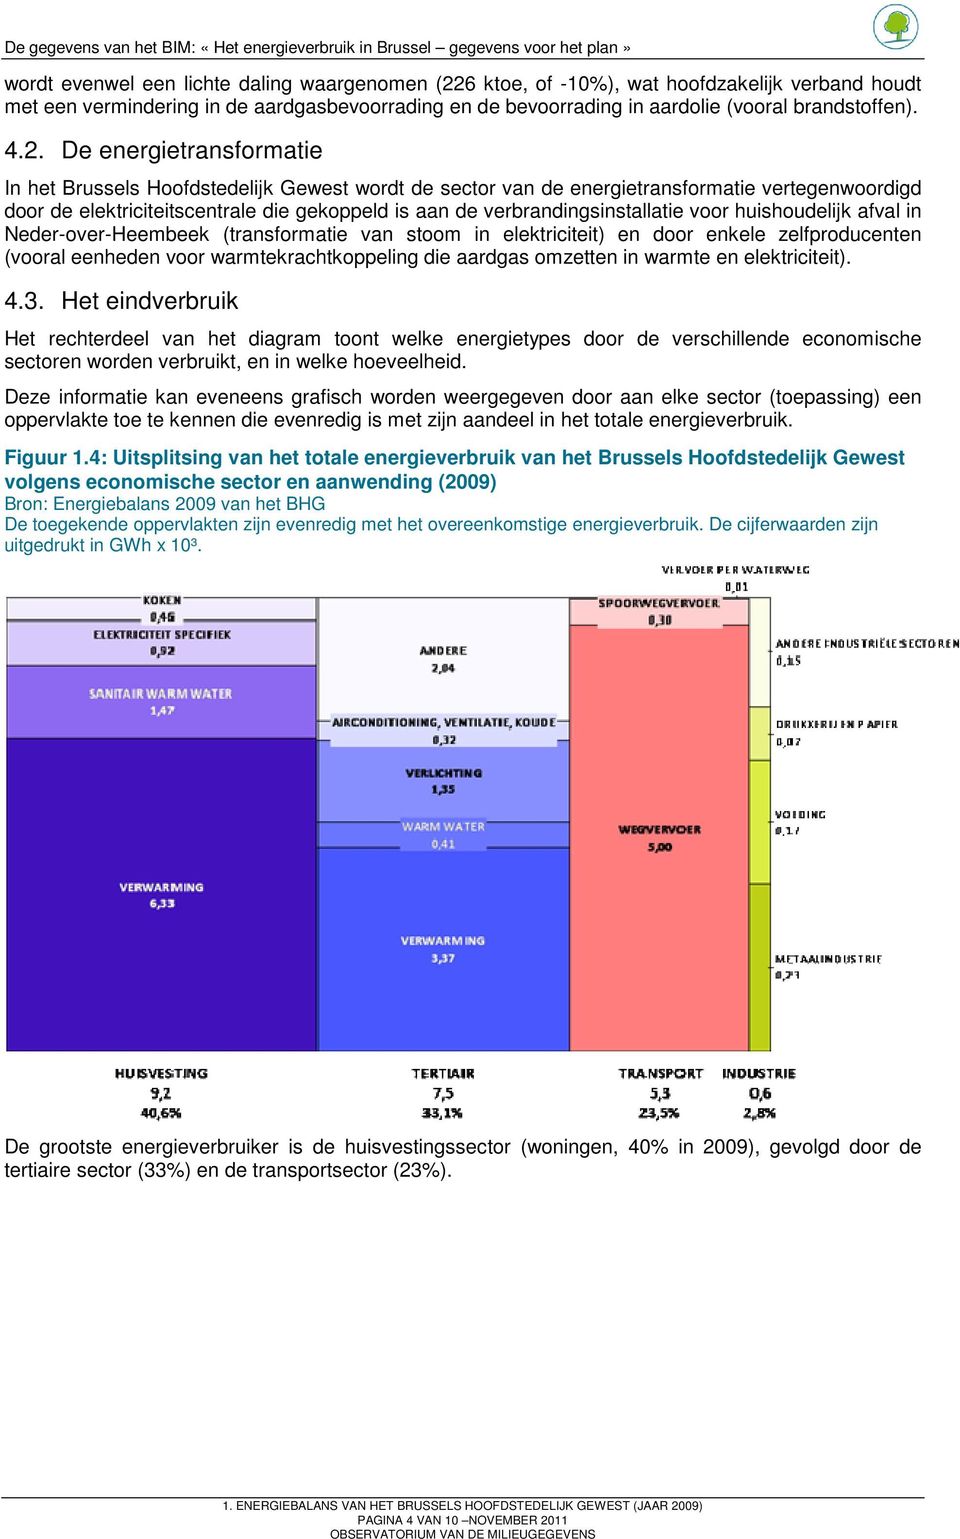 verbrandingsinstallatie voor huishoudelijk afval in Neder-over-Heembeek (transformatie van stoom in elektriciteit) en door enkele zelfproducenten (vooral eenheden voor warmtekrachtkoppeling die